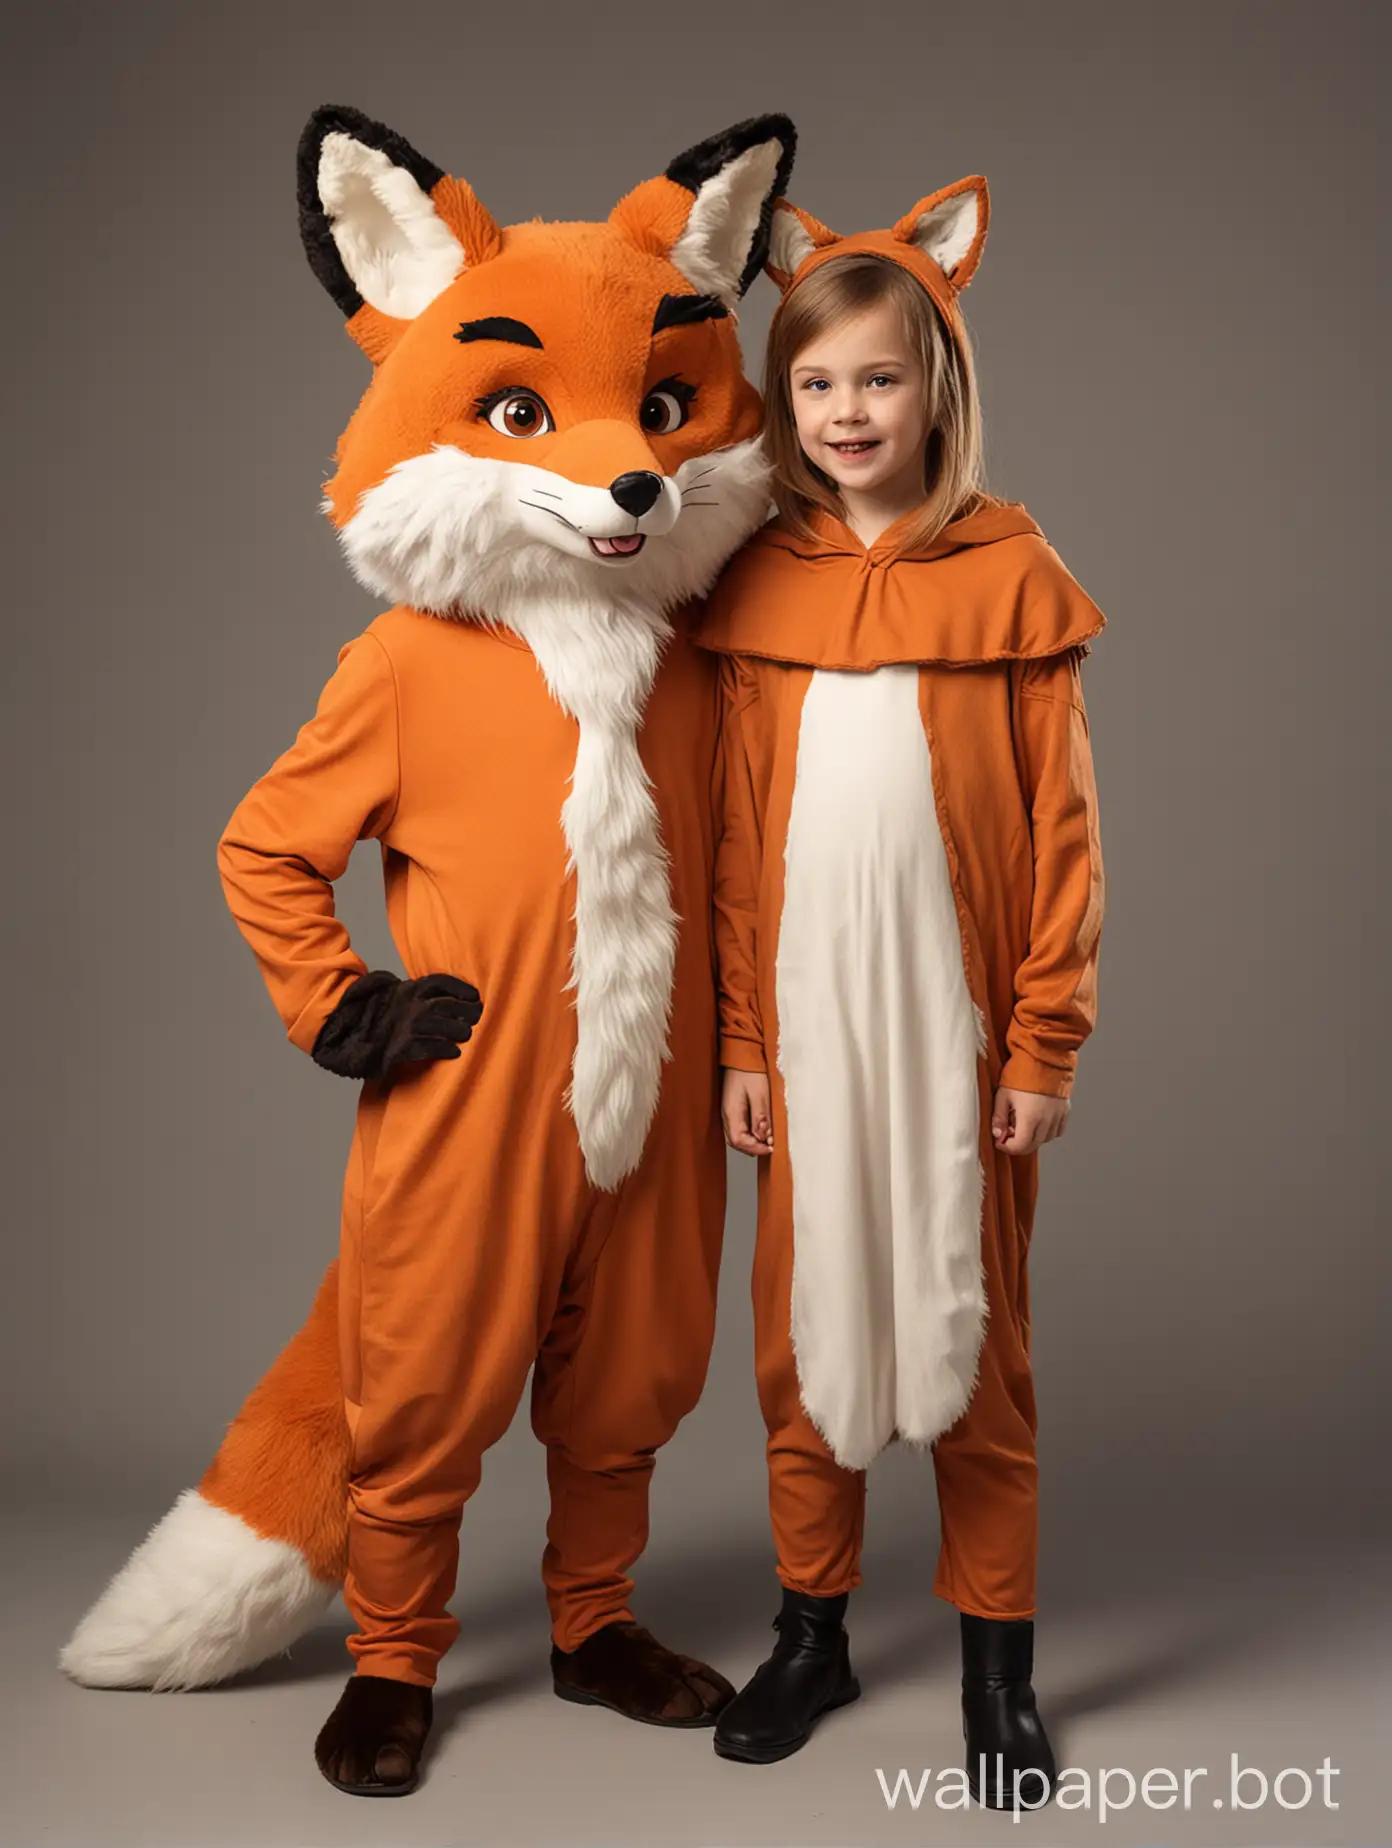 маленький мальчик и девочка с взрослым аниматором, одетым в костюм лиса